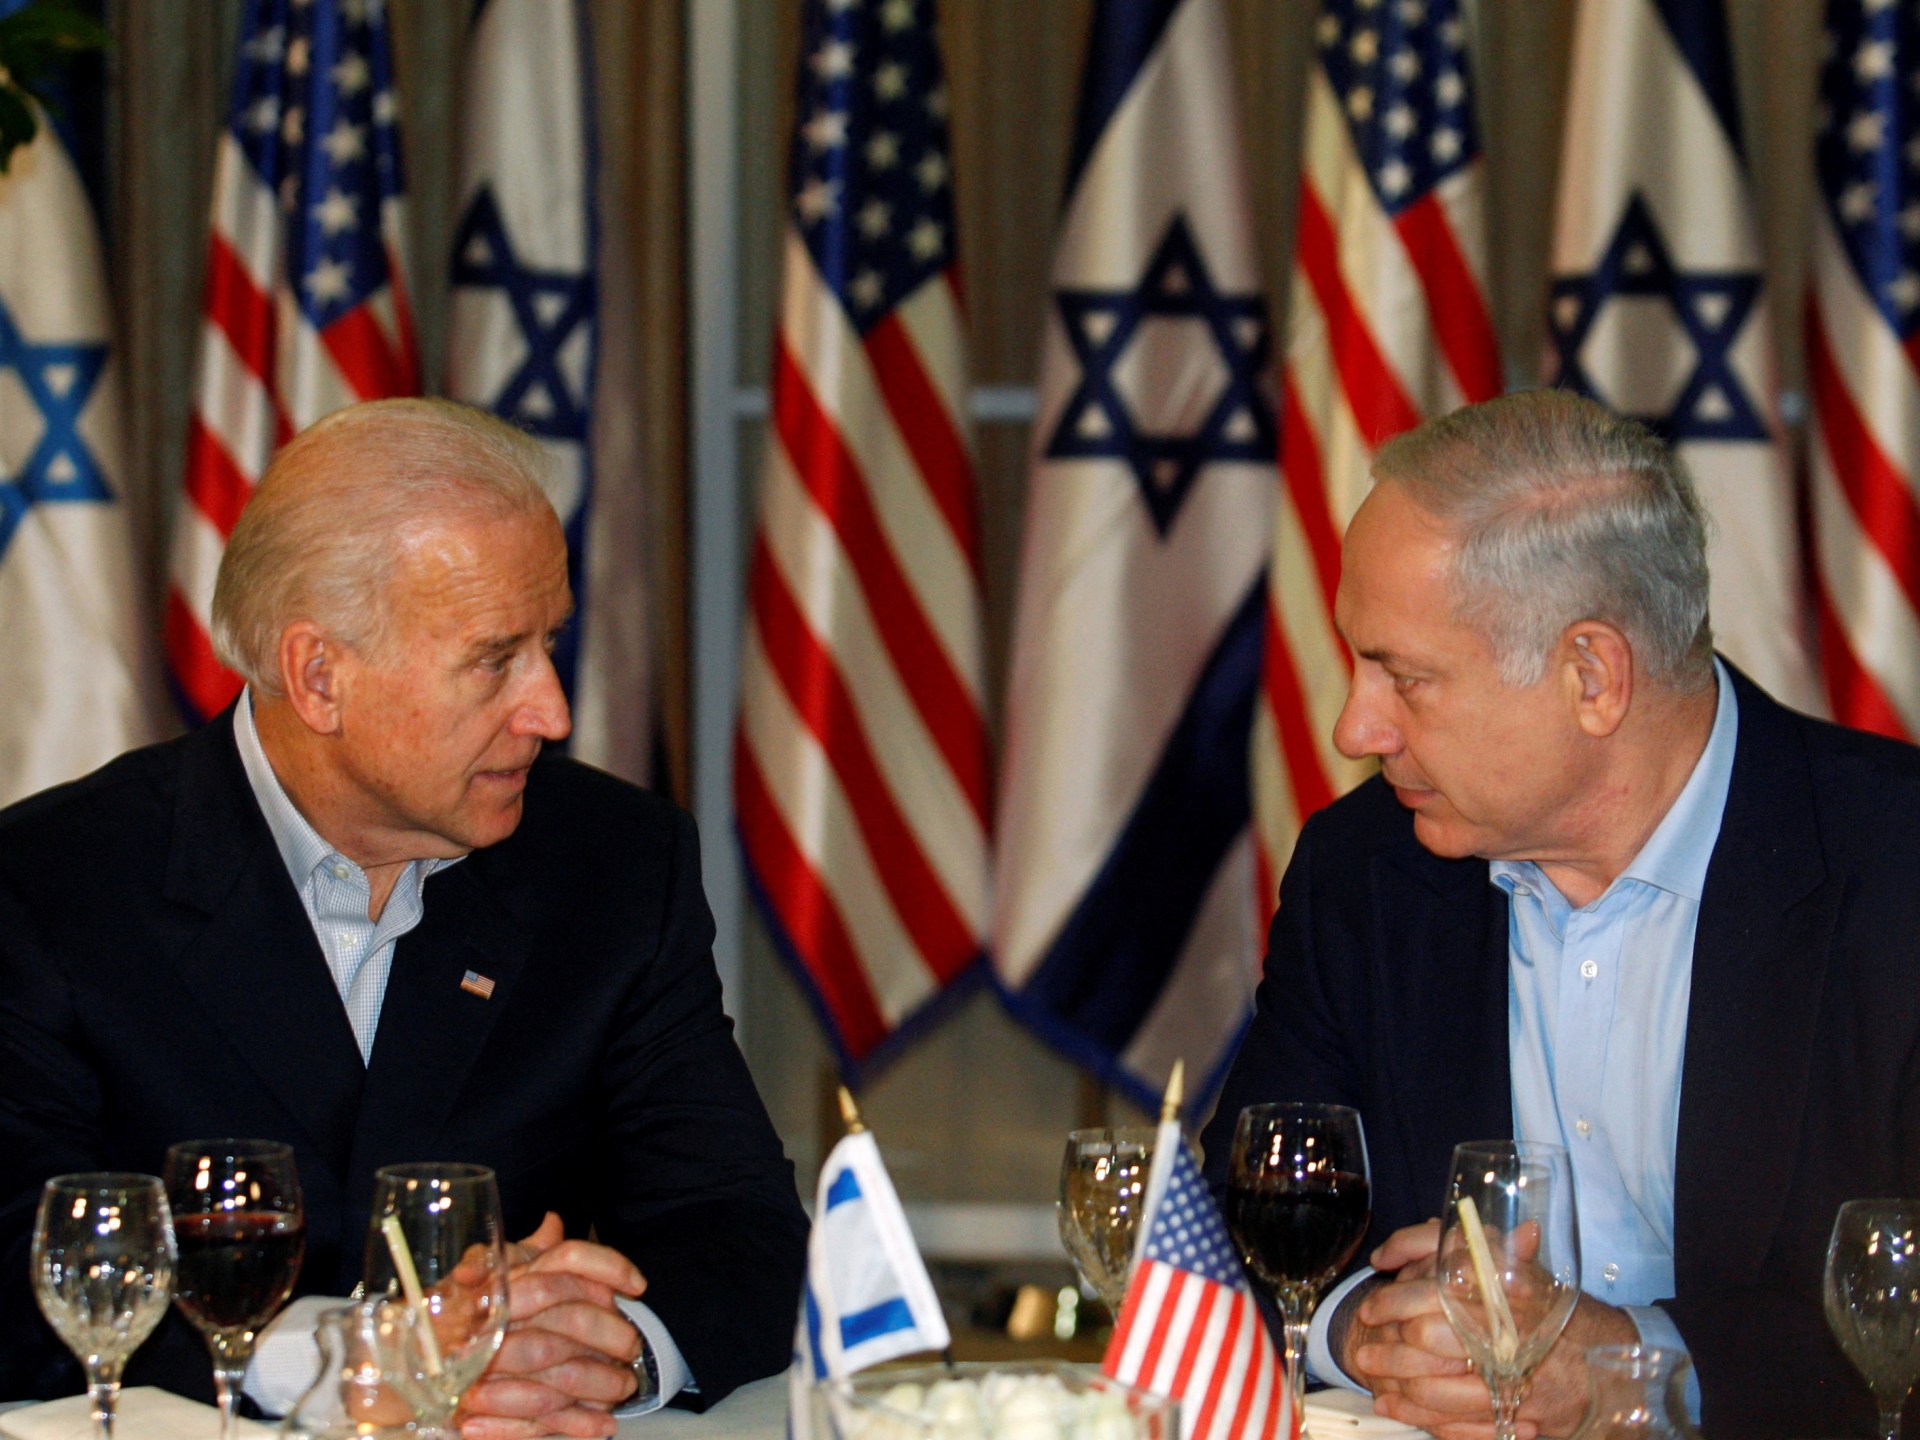 واشنطن تطلب توضيحا من إسرائيل بشأن تصريحات نتنياهو عن غزة | سياسة – البوكس نيوز